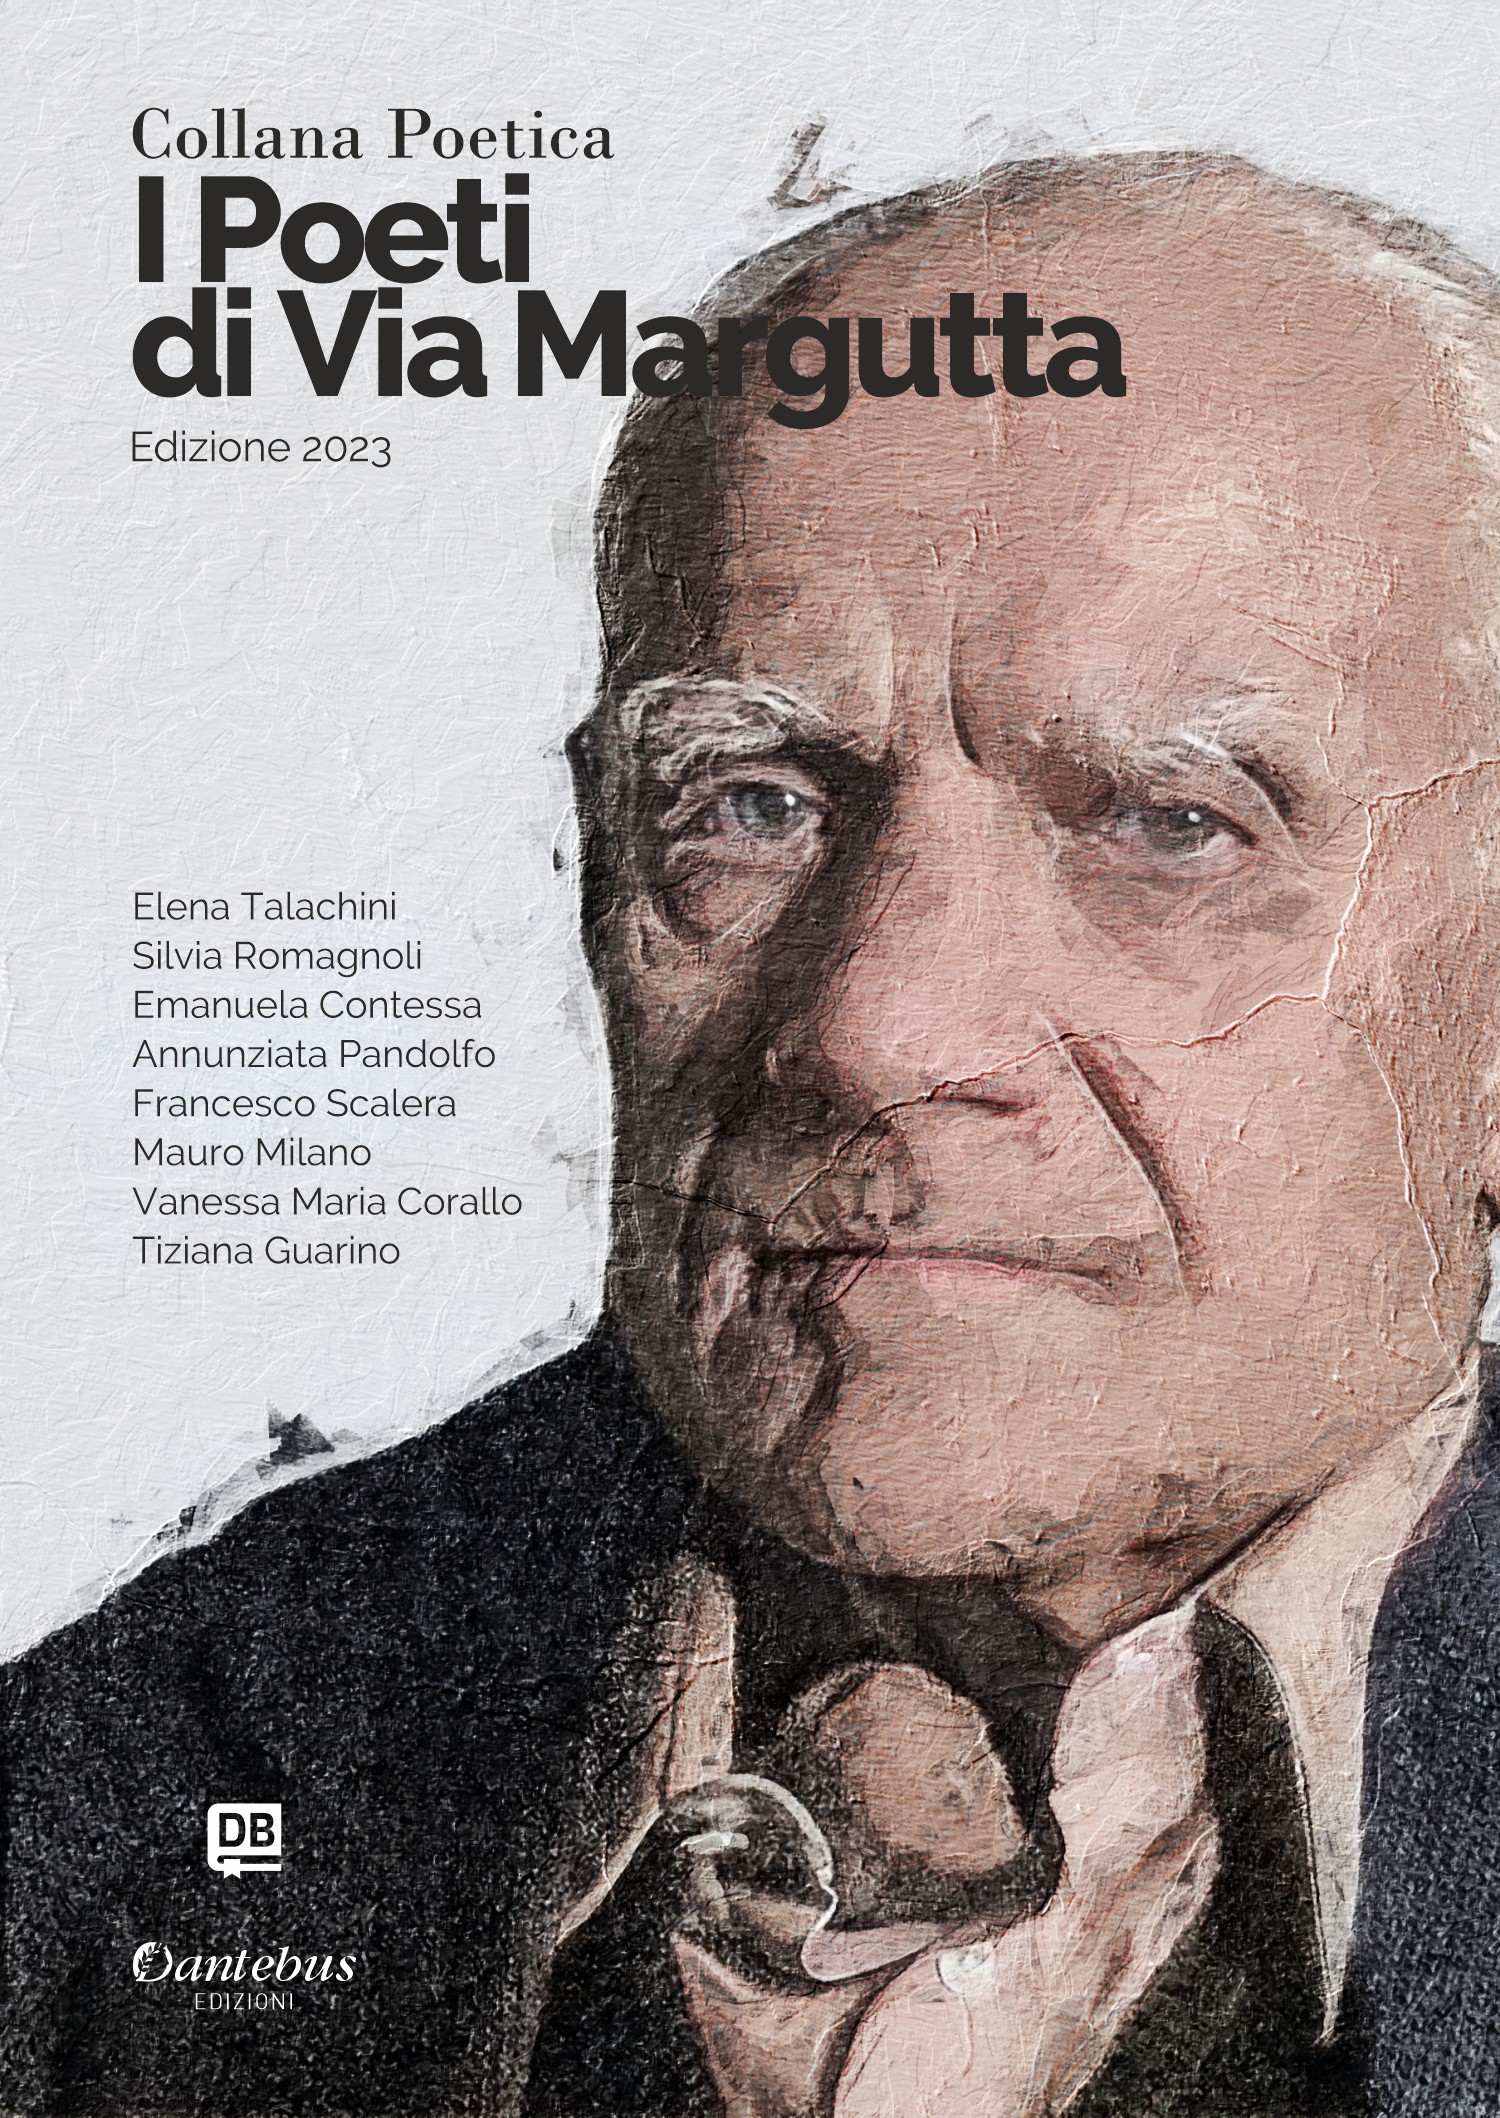 Collana Poetica I Poeti di Via Margutta vol. 24 - Edizione 2023 - Librerie.coop